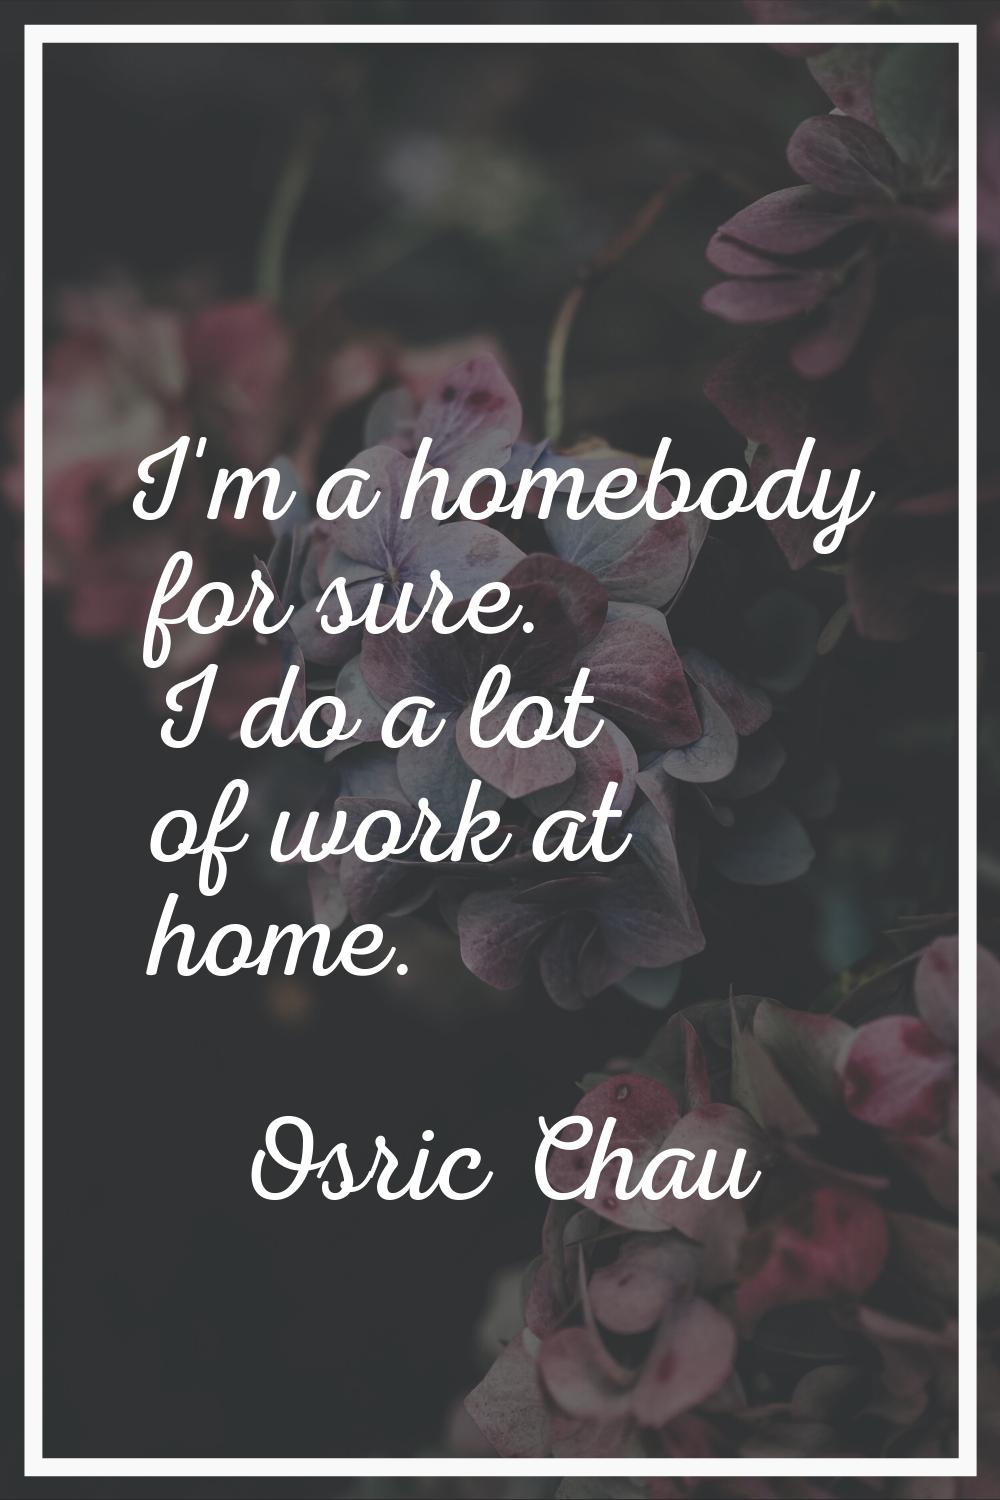 I'm a homebody for sure. I do a lot of work at home.